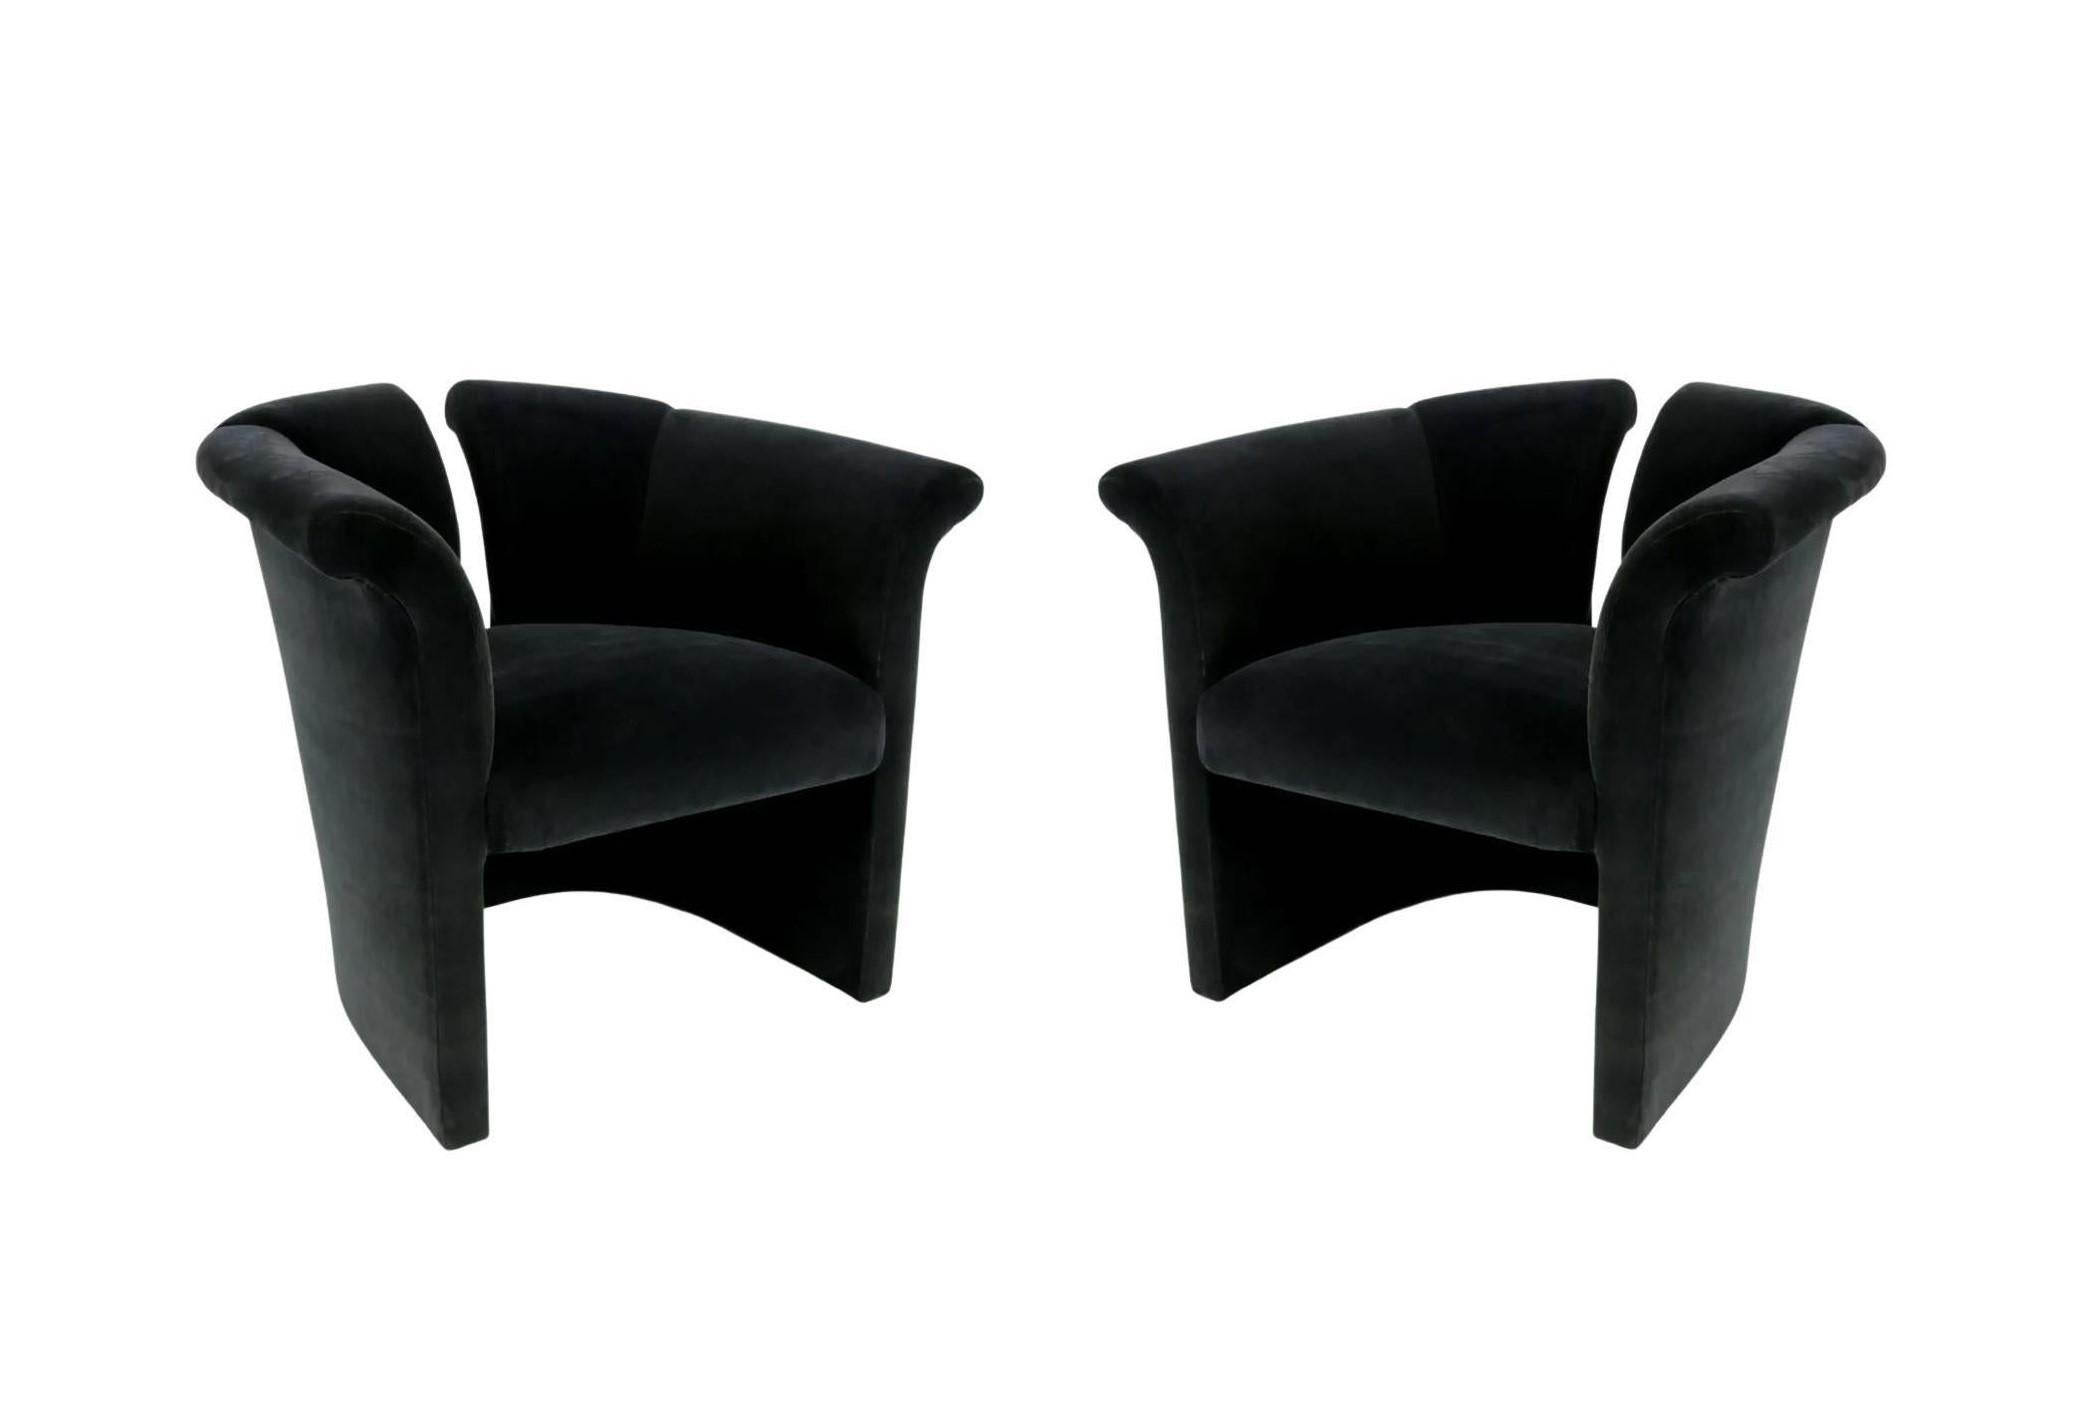 Dies ist ein einzigartiges Paar postmoderner Akzentstühle, entworfen von Milo Baughman. Er war ein Pionier des modernen Designs und einer der führenden modernen Möbeldesigner der zweiten Hälfte des 20. Jahrhunderts. Baughmans einzigartig